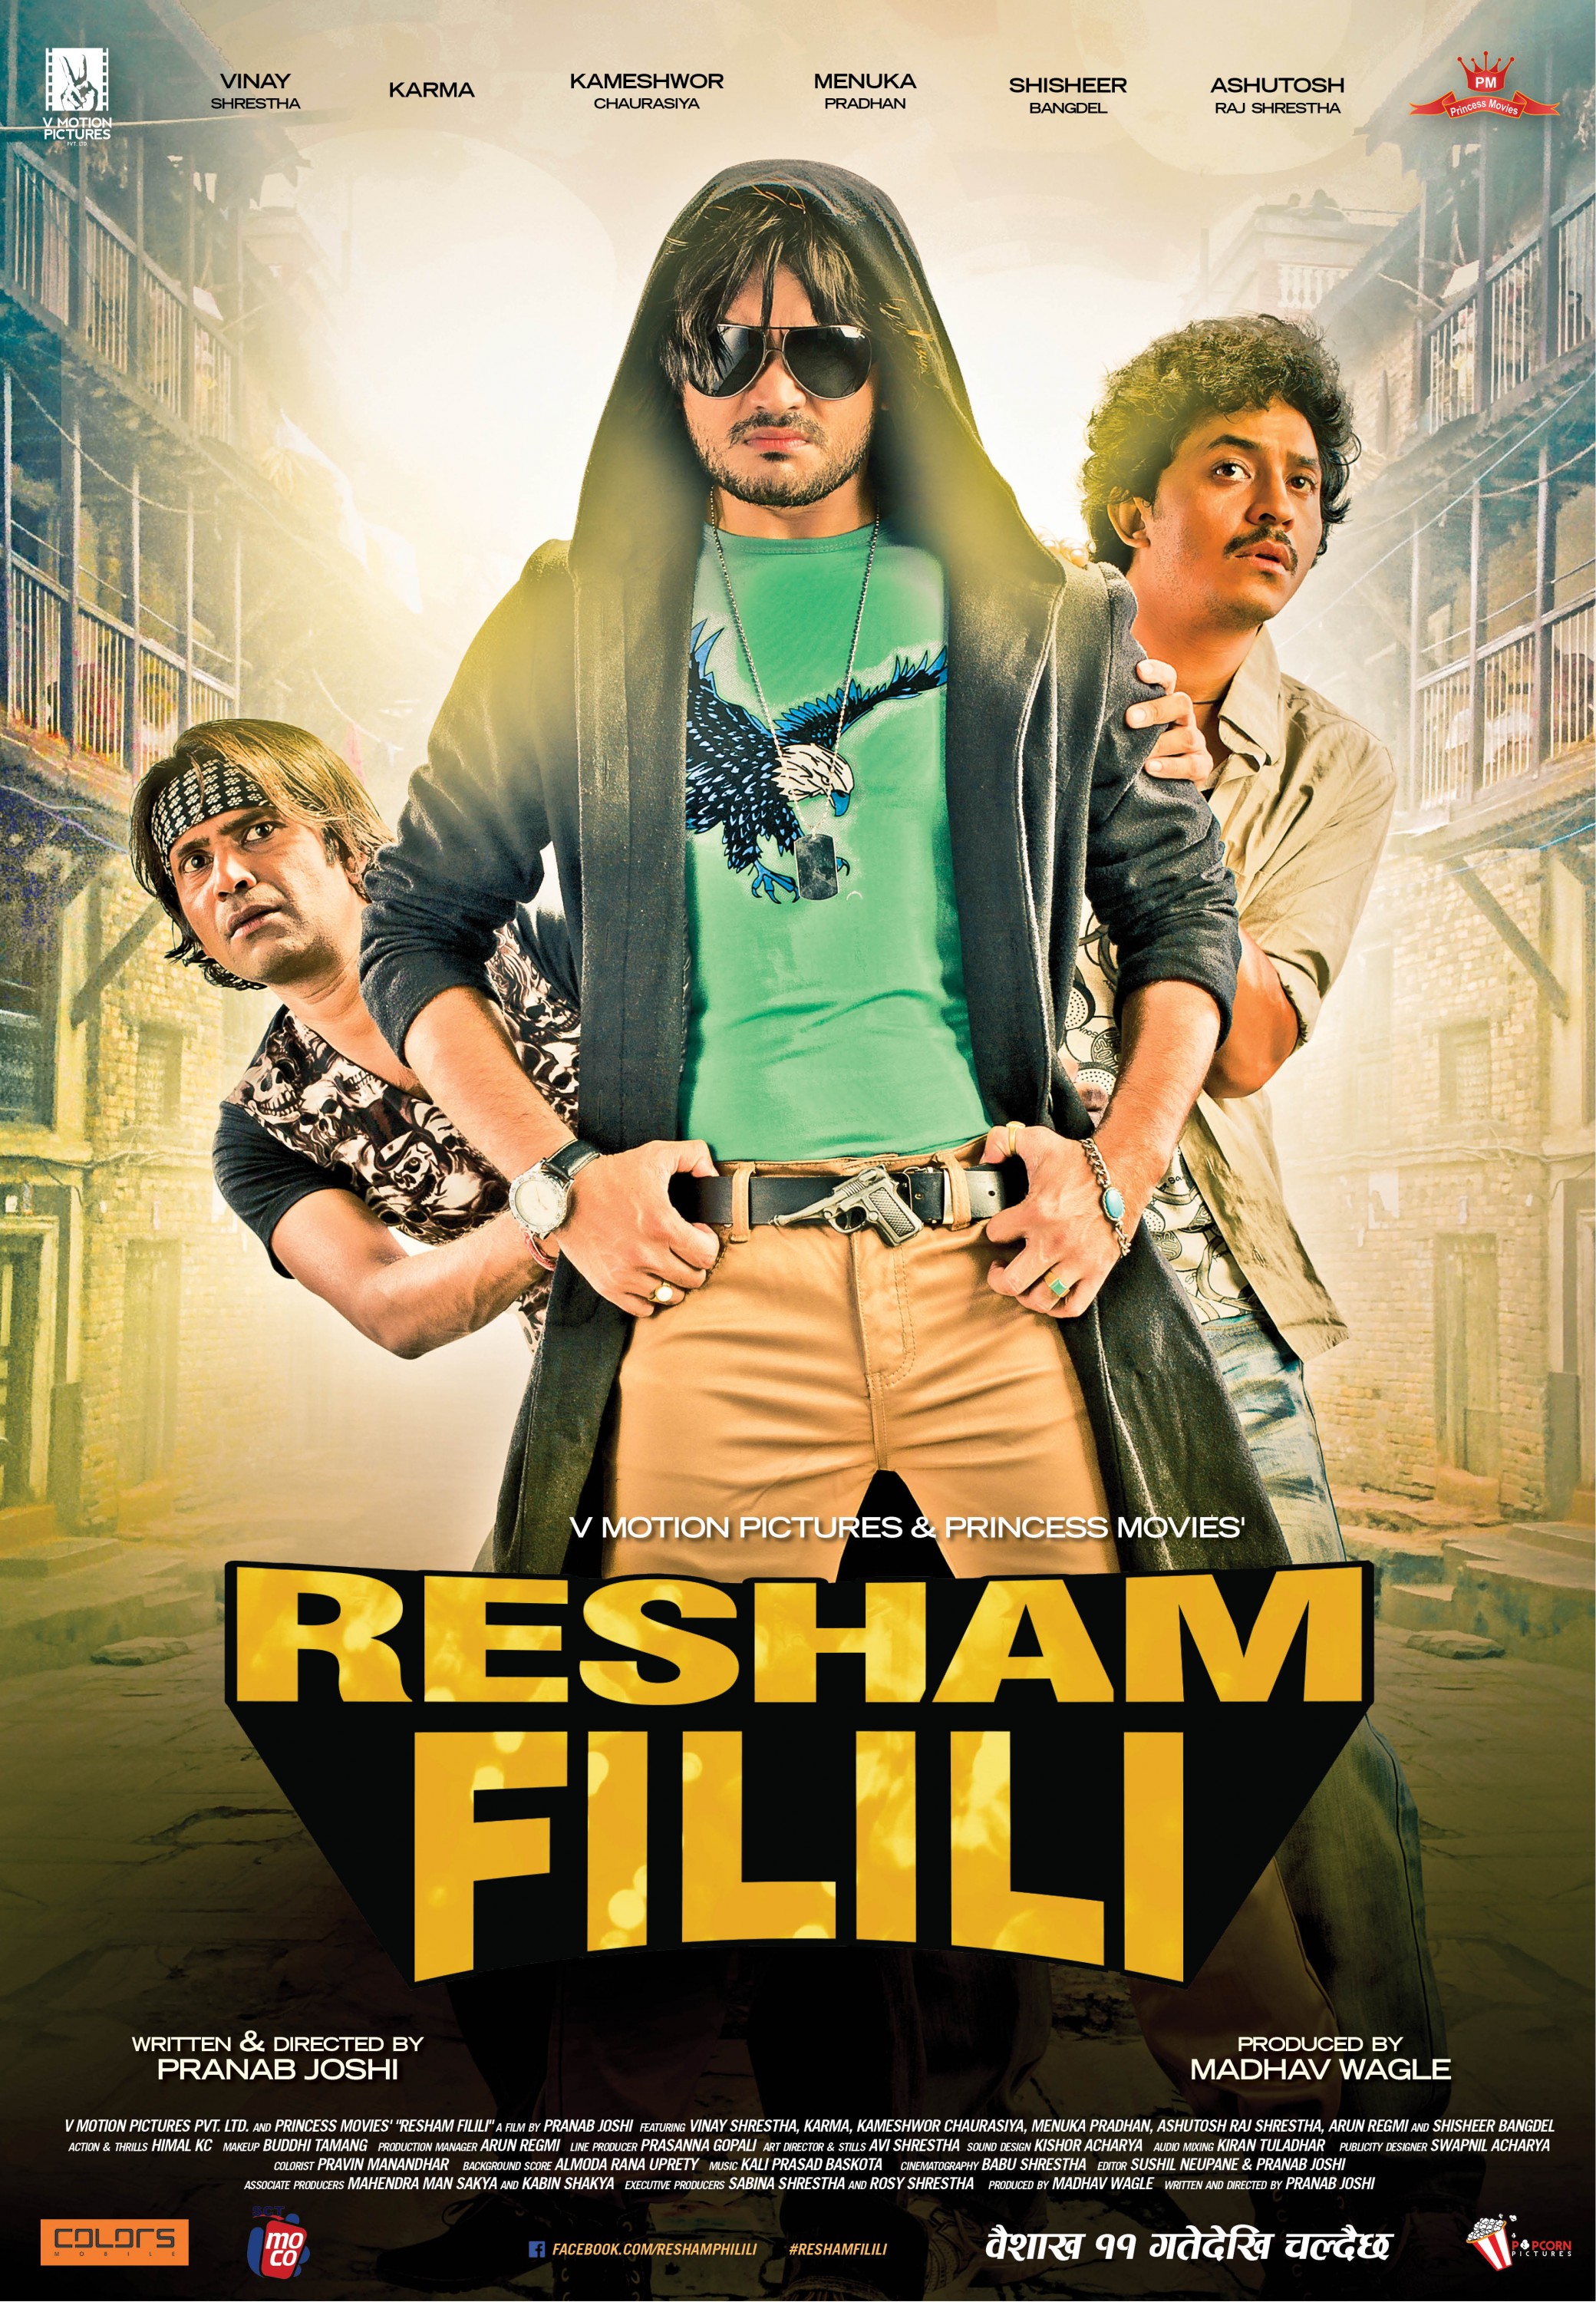 Mega Sized Movie Poster Image for Resham Filili (#3 of 11)